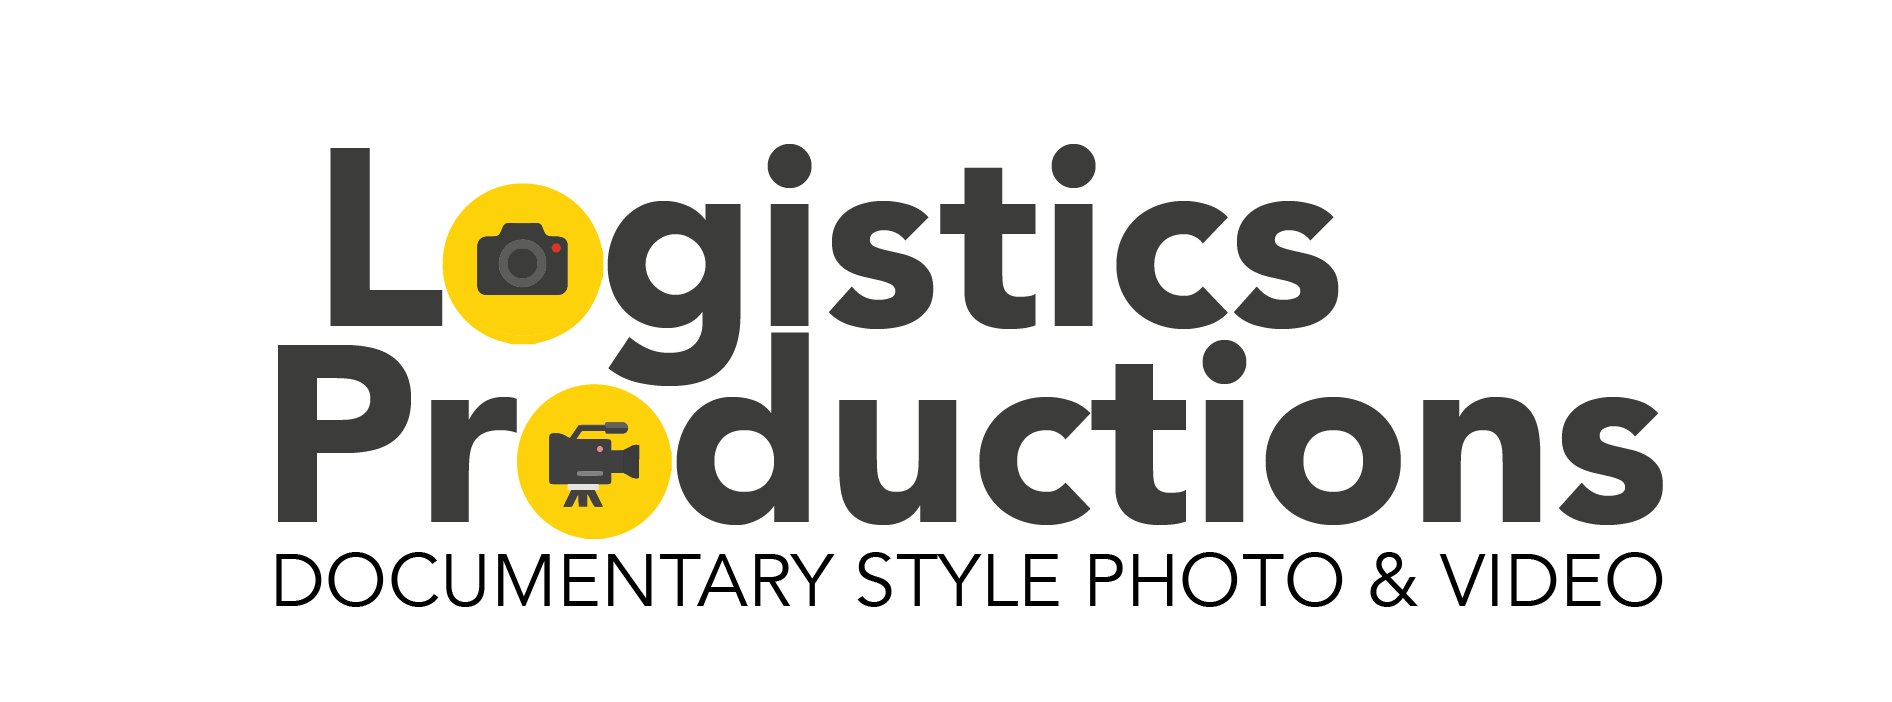 Logistics Productions LOGO-01.png